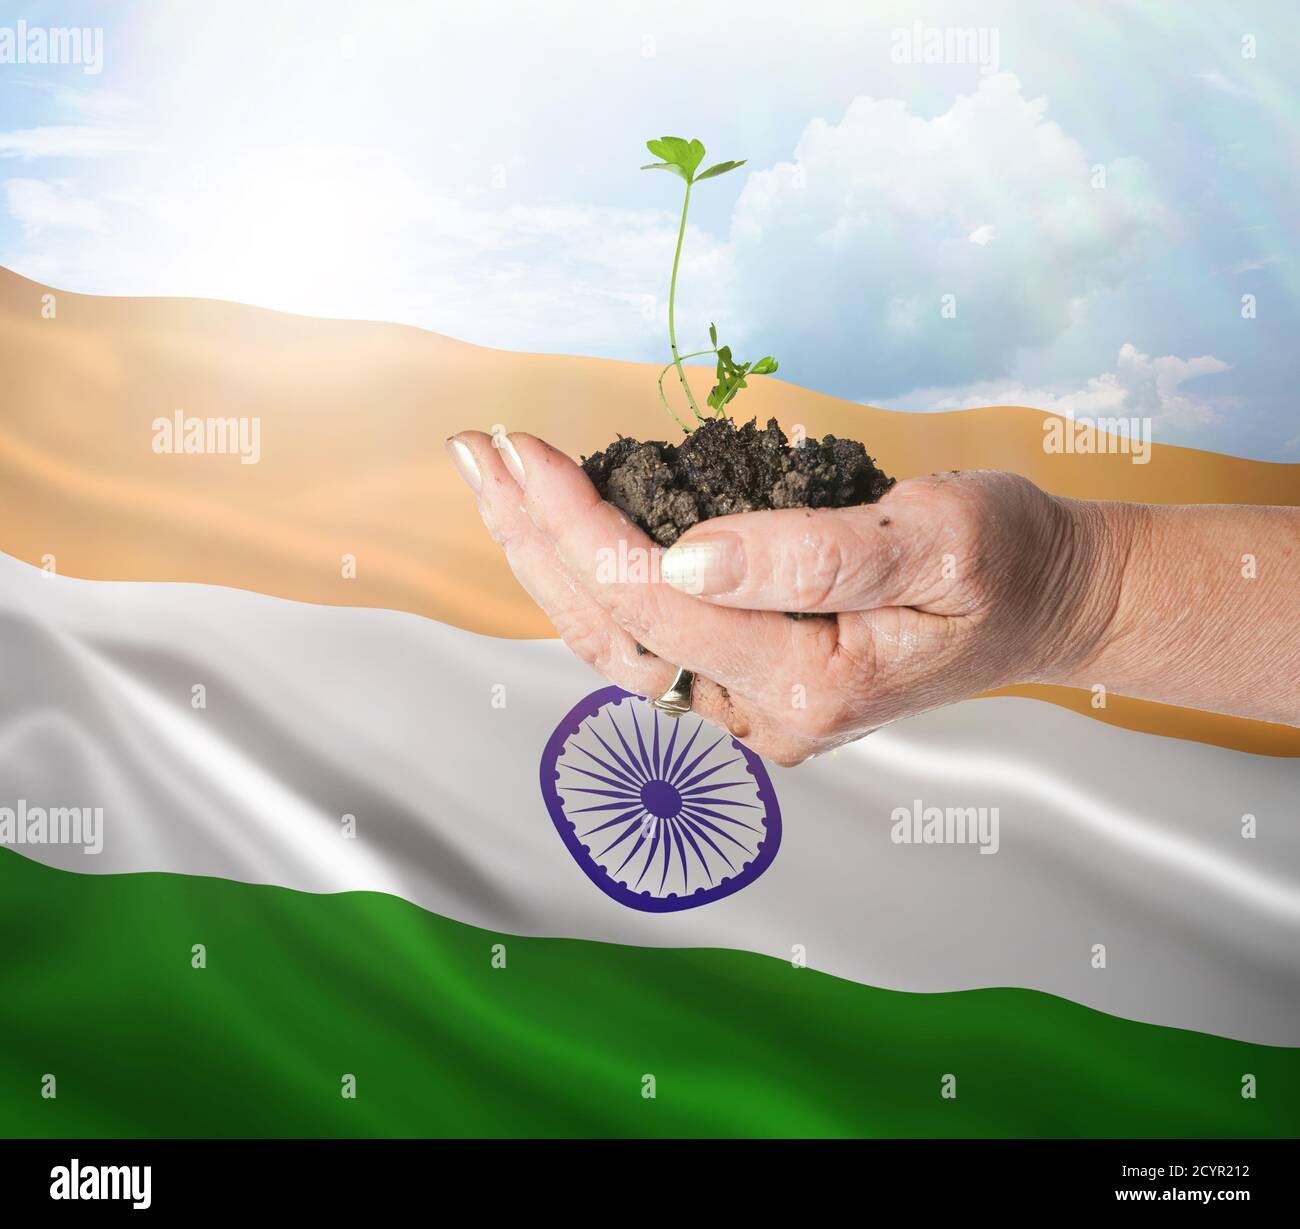 India crecimiento y nuevo comienzo. Concepto de energía renovable verde y ecología. Mano sosteniendo planta joven. Foto de stock